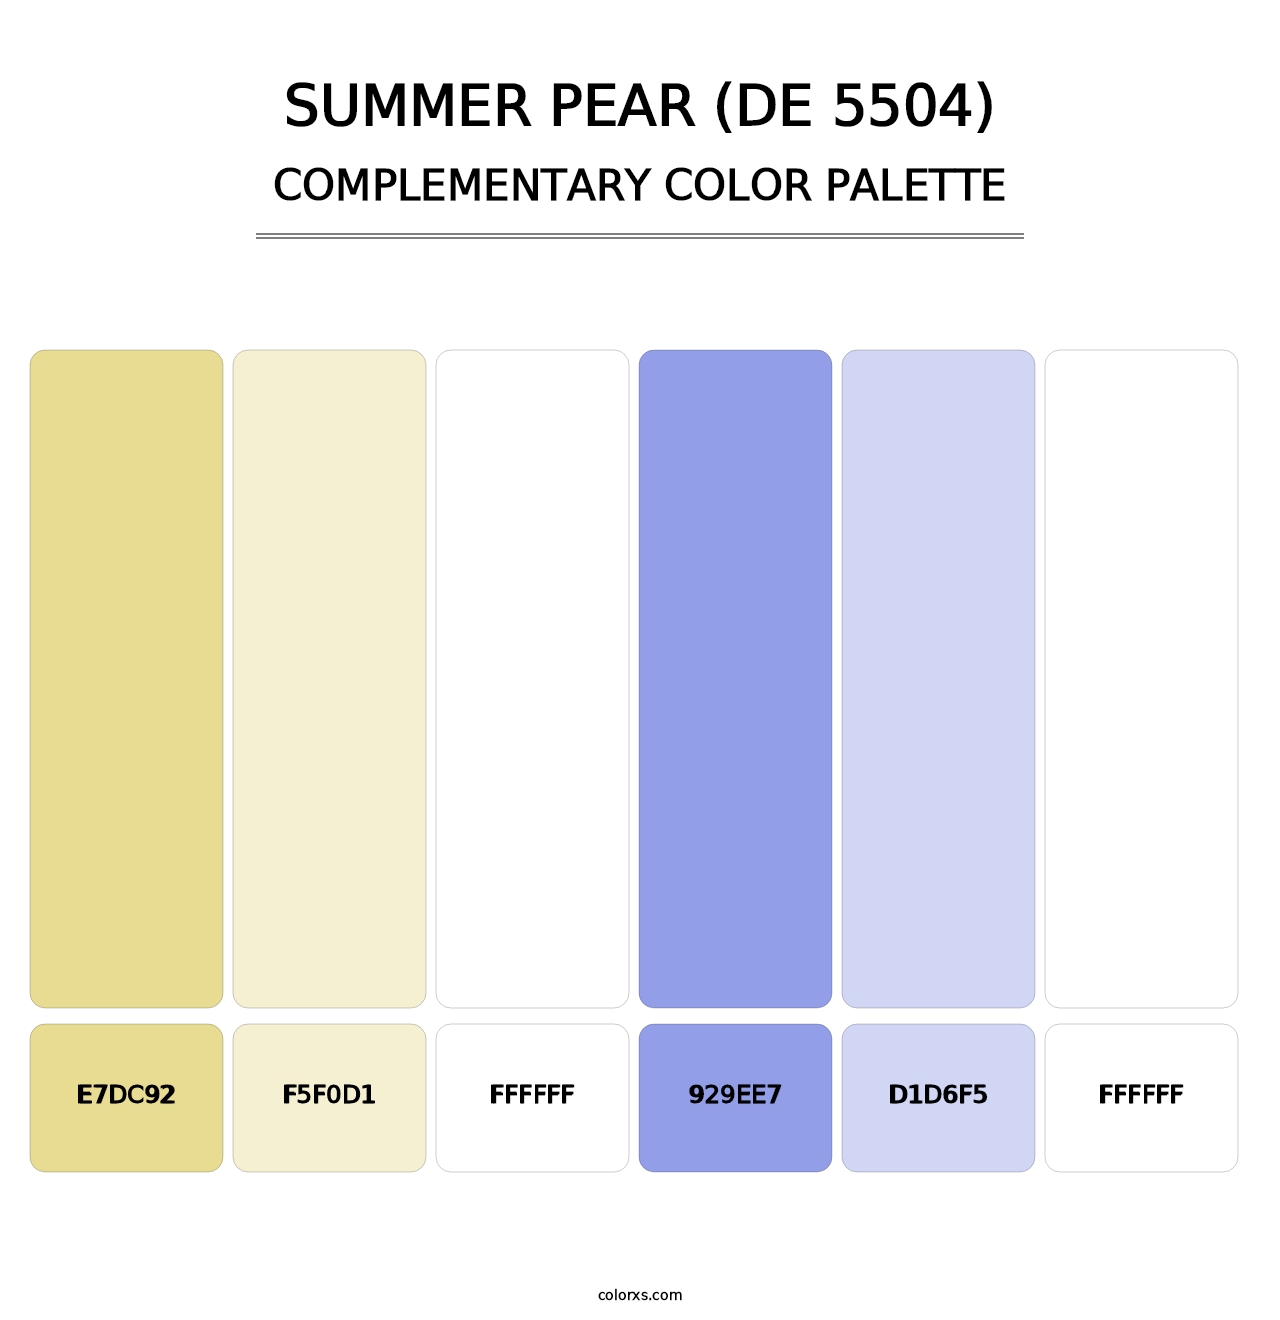 Summer Pear (DE 5504) - Complementary Color Palette